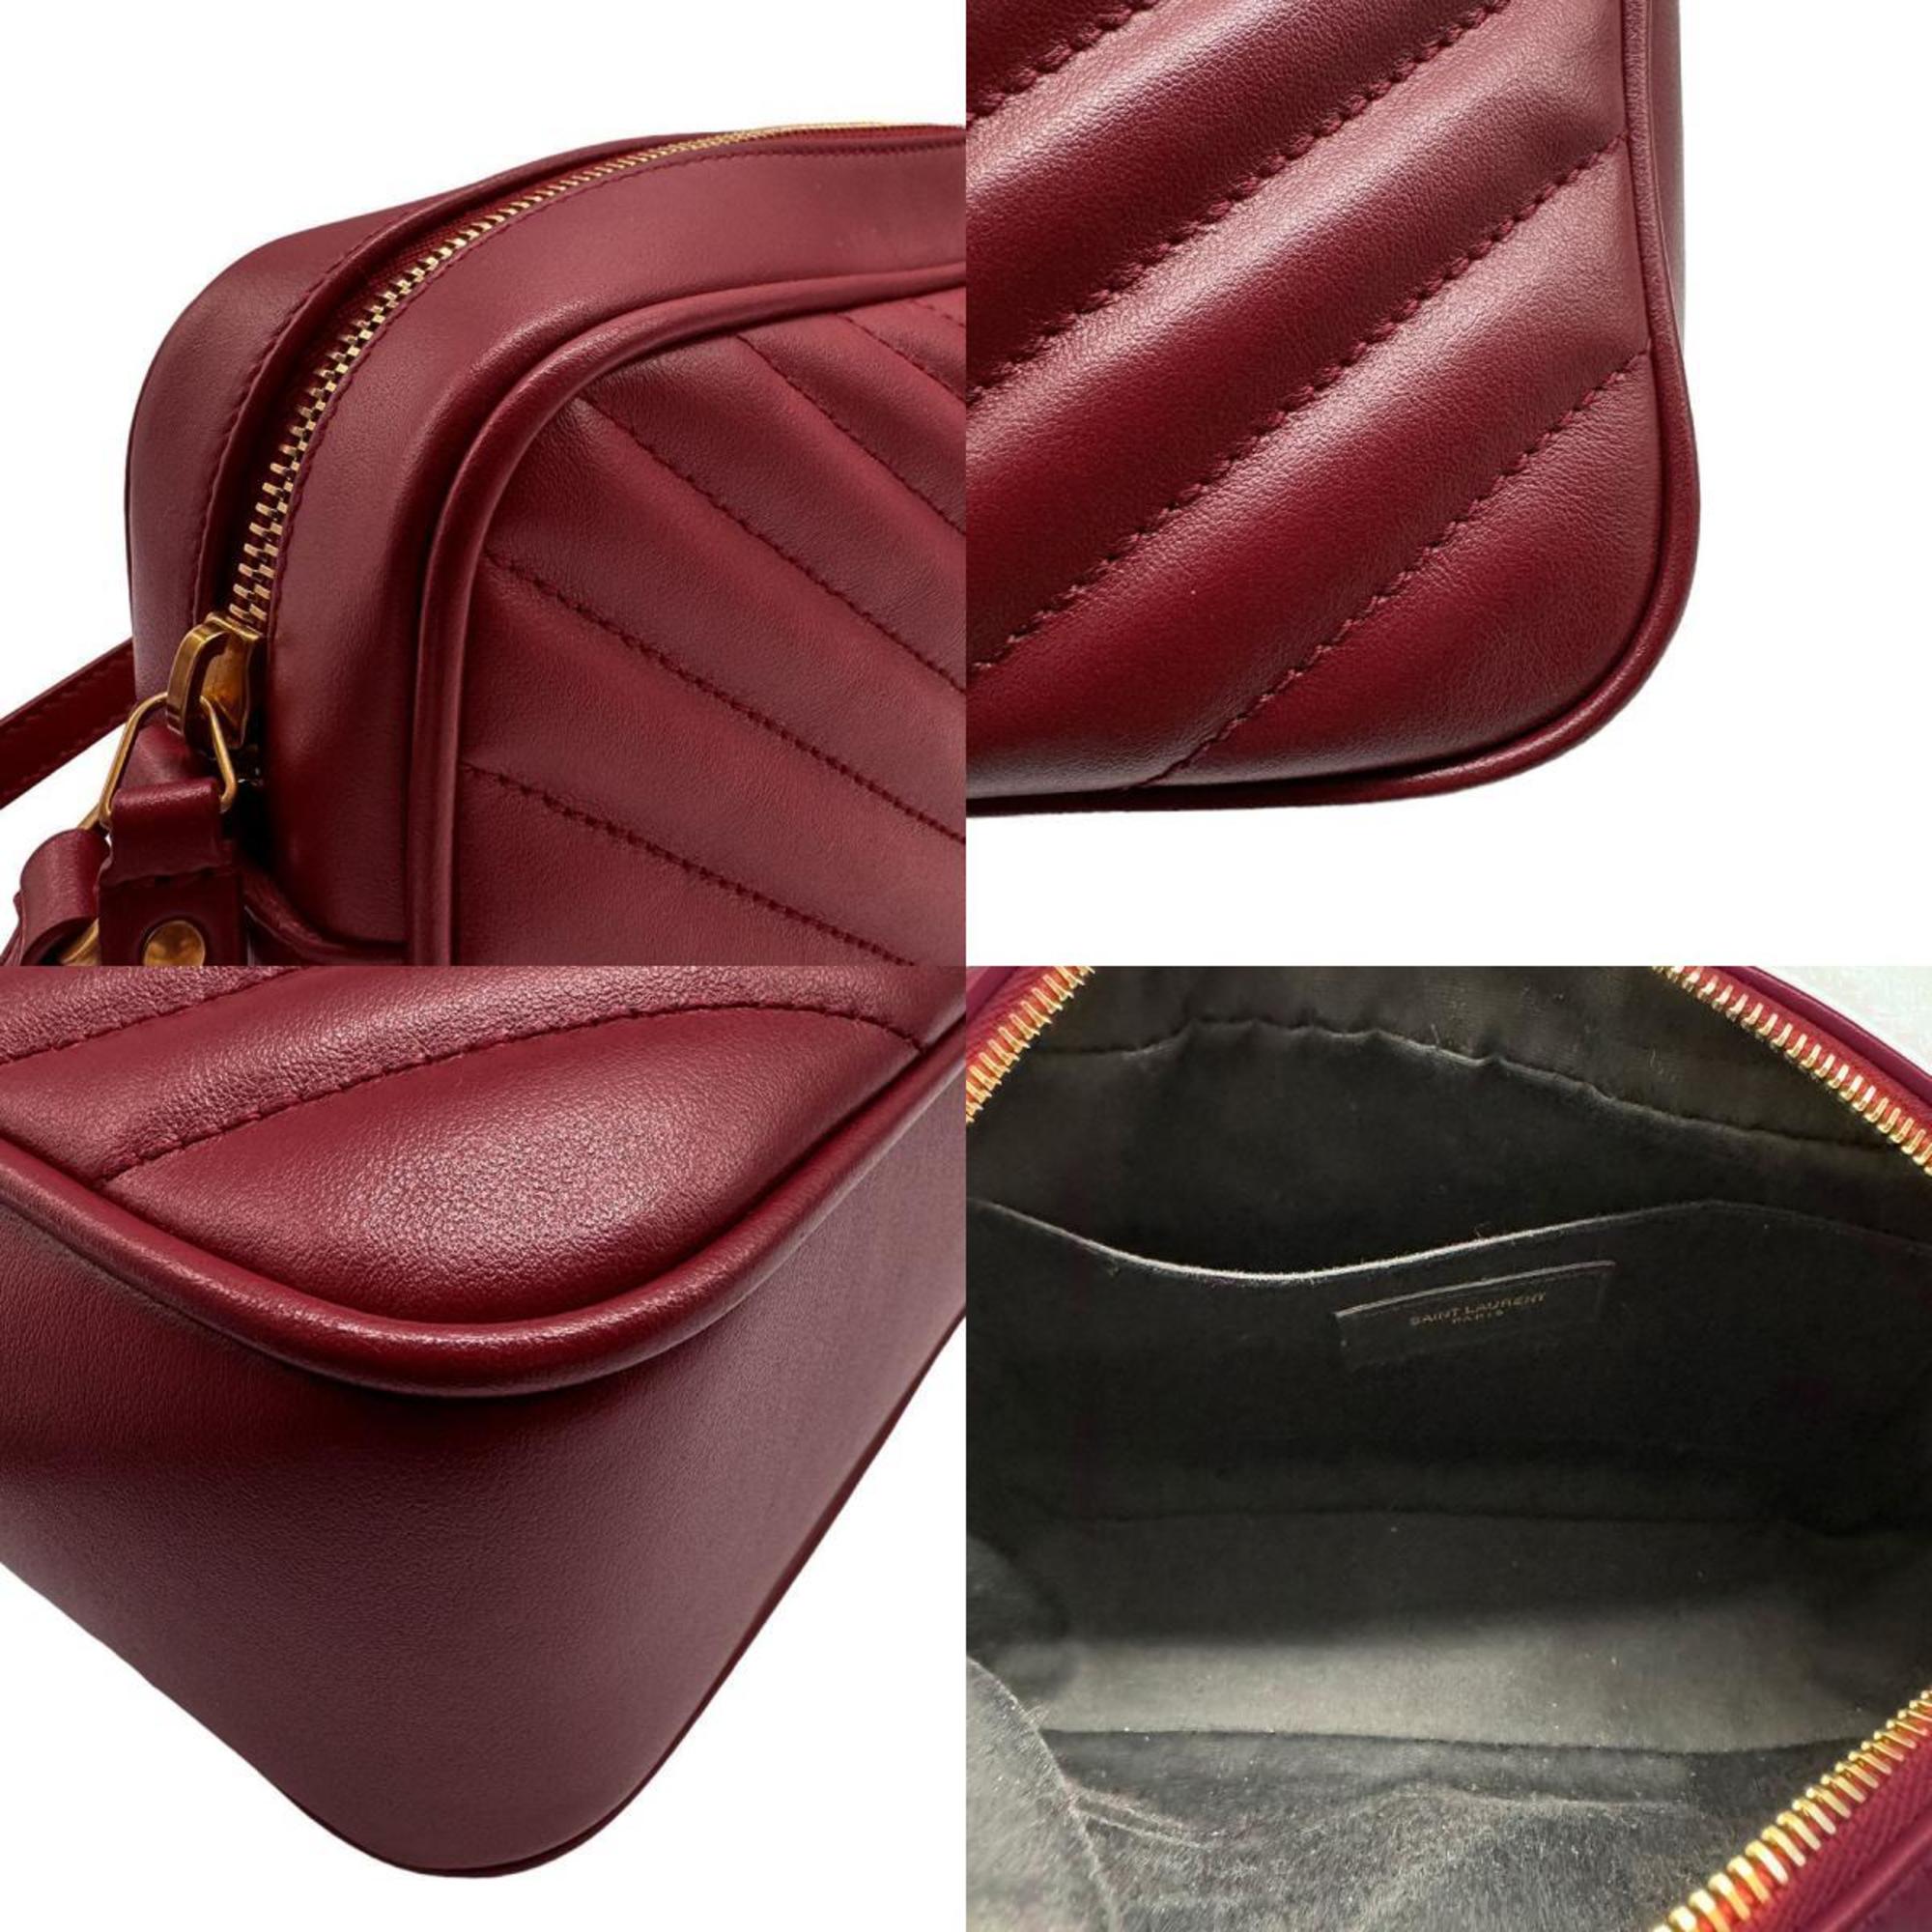 Saint Laurent shoulder bag leather red unisex 612544 z0458